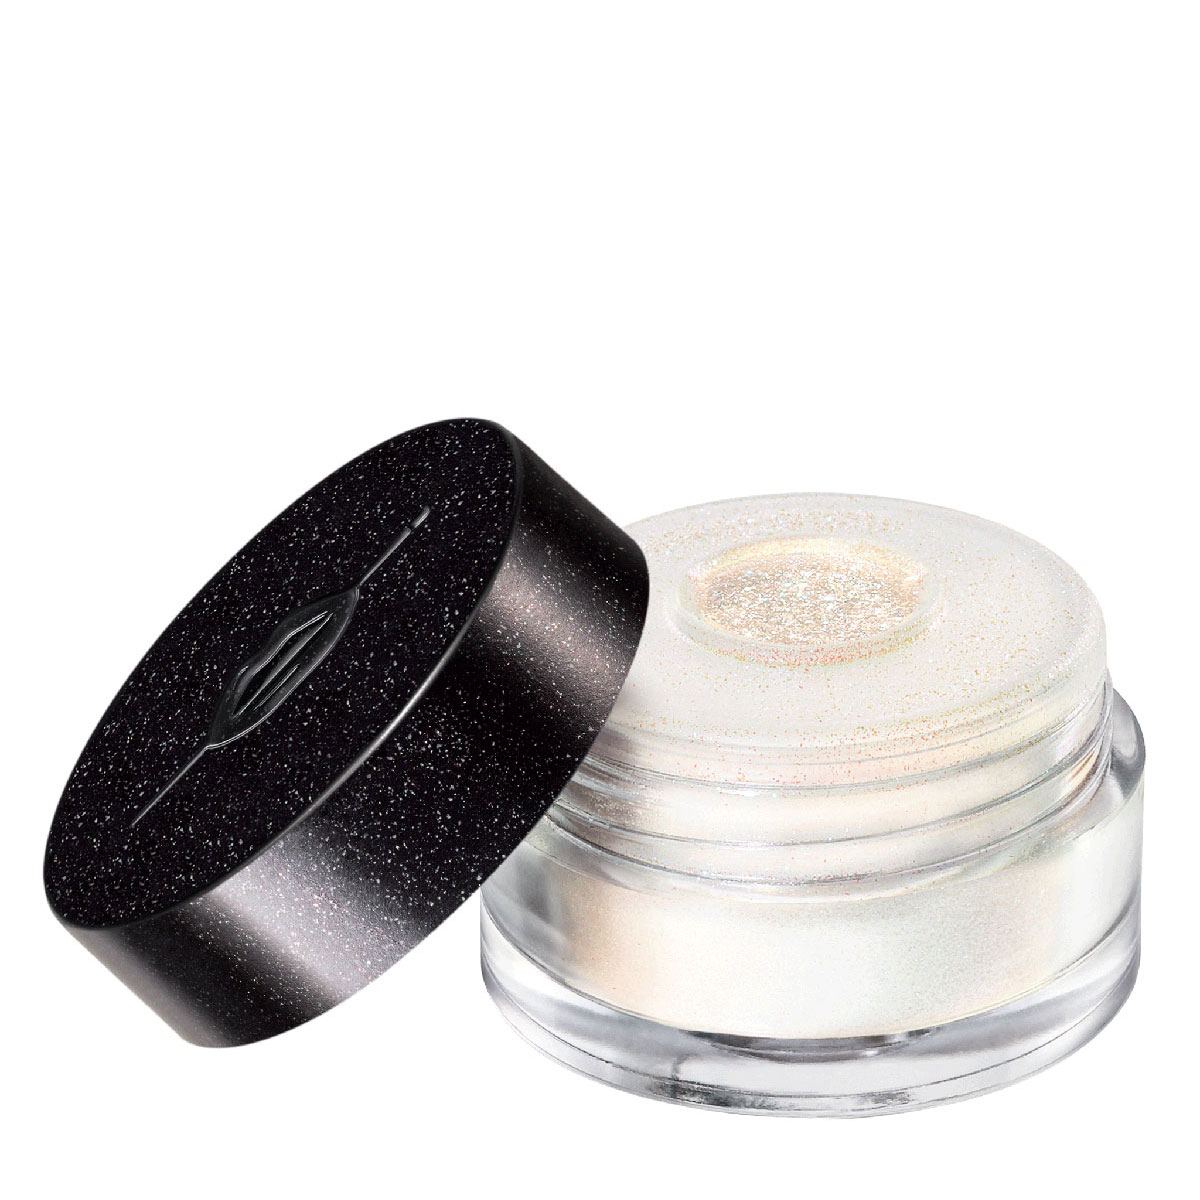 Make Up For Ever Star Lit Diamond Powder 102 White Gold 2.6G